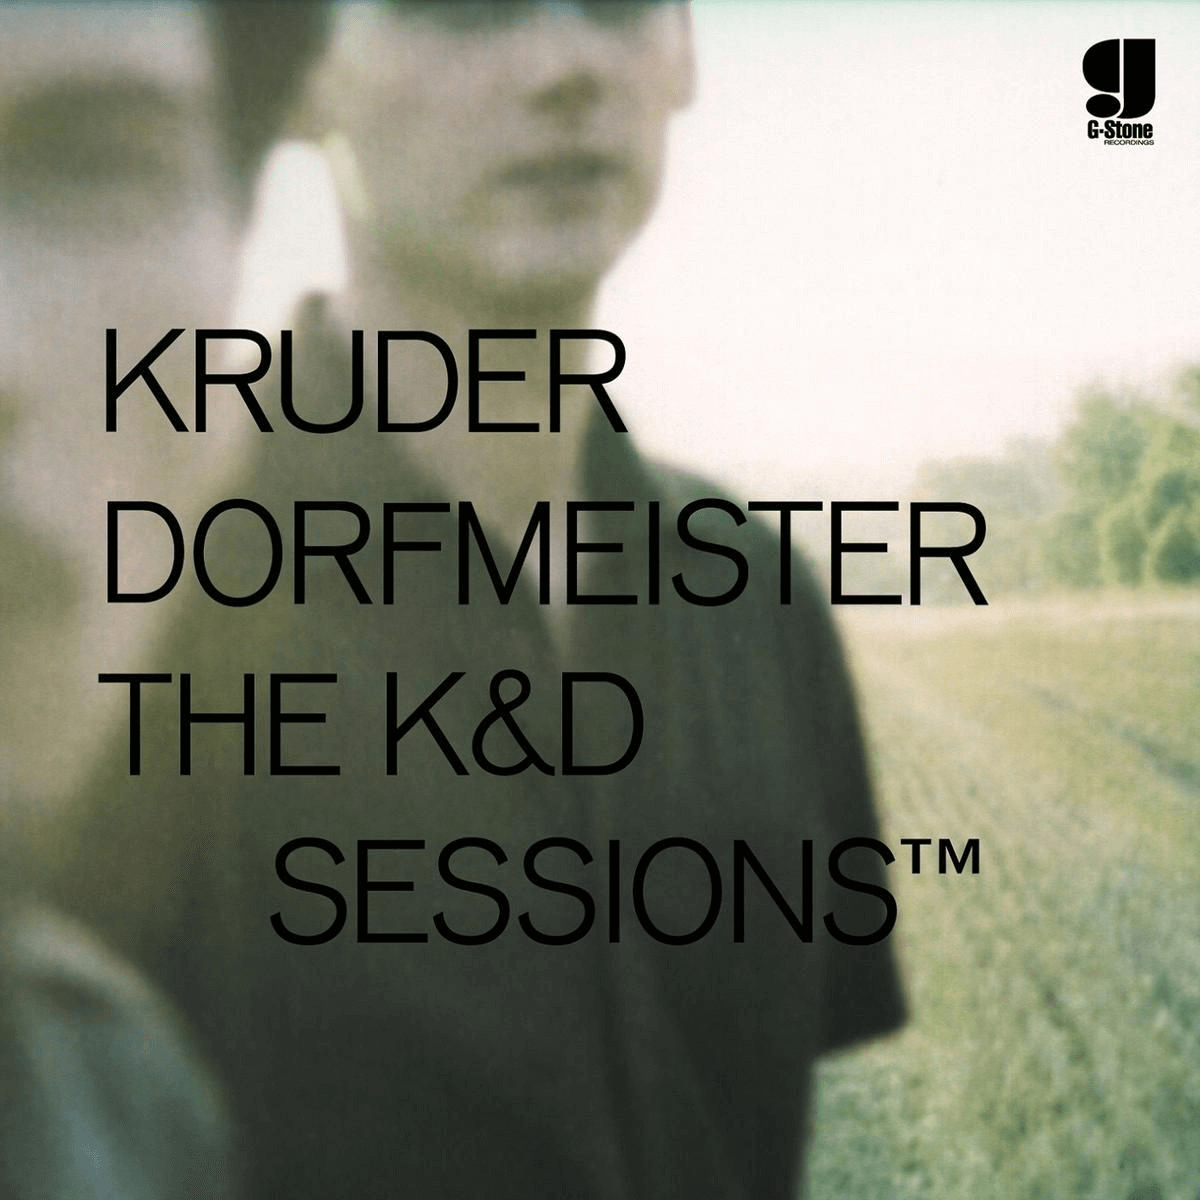 Okładka płyty winylowej artysty Kruder Dorfmeister o tytule KD Sessions